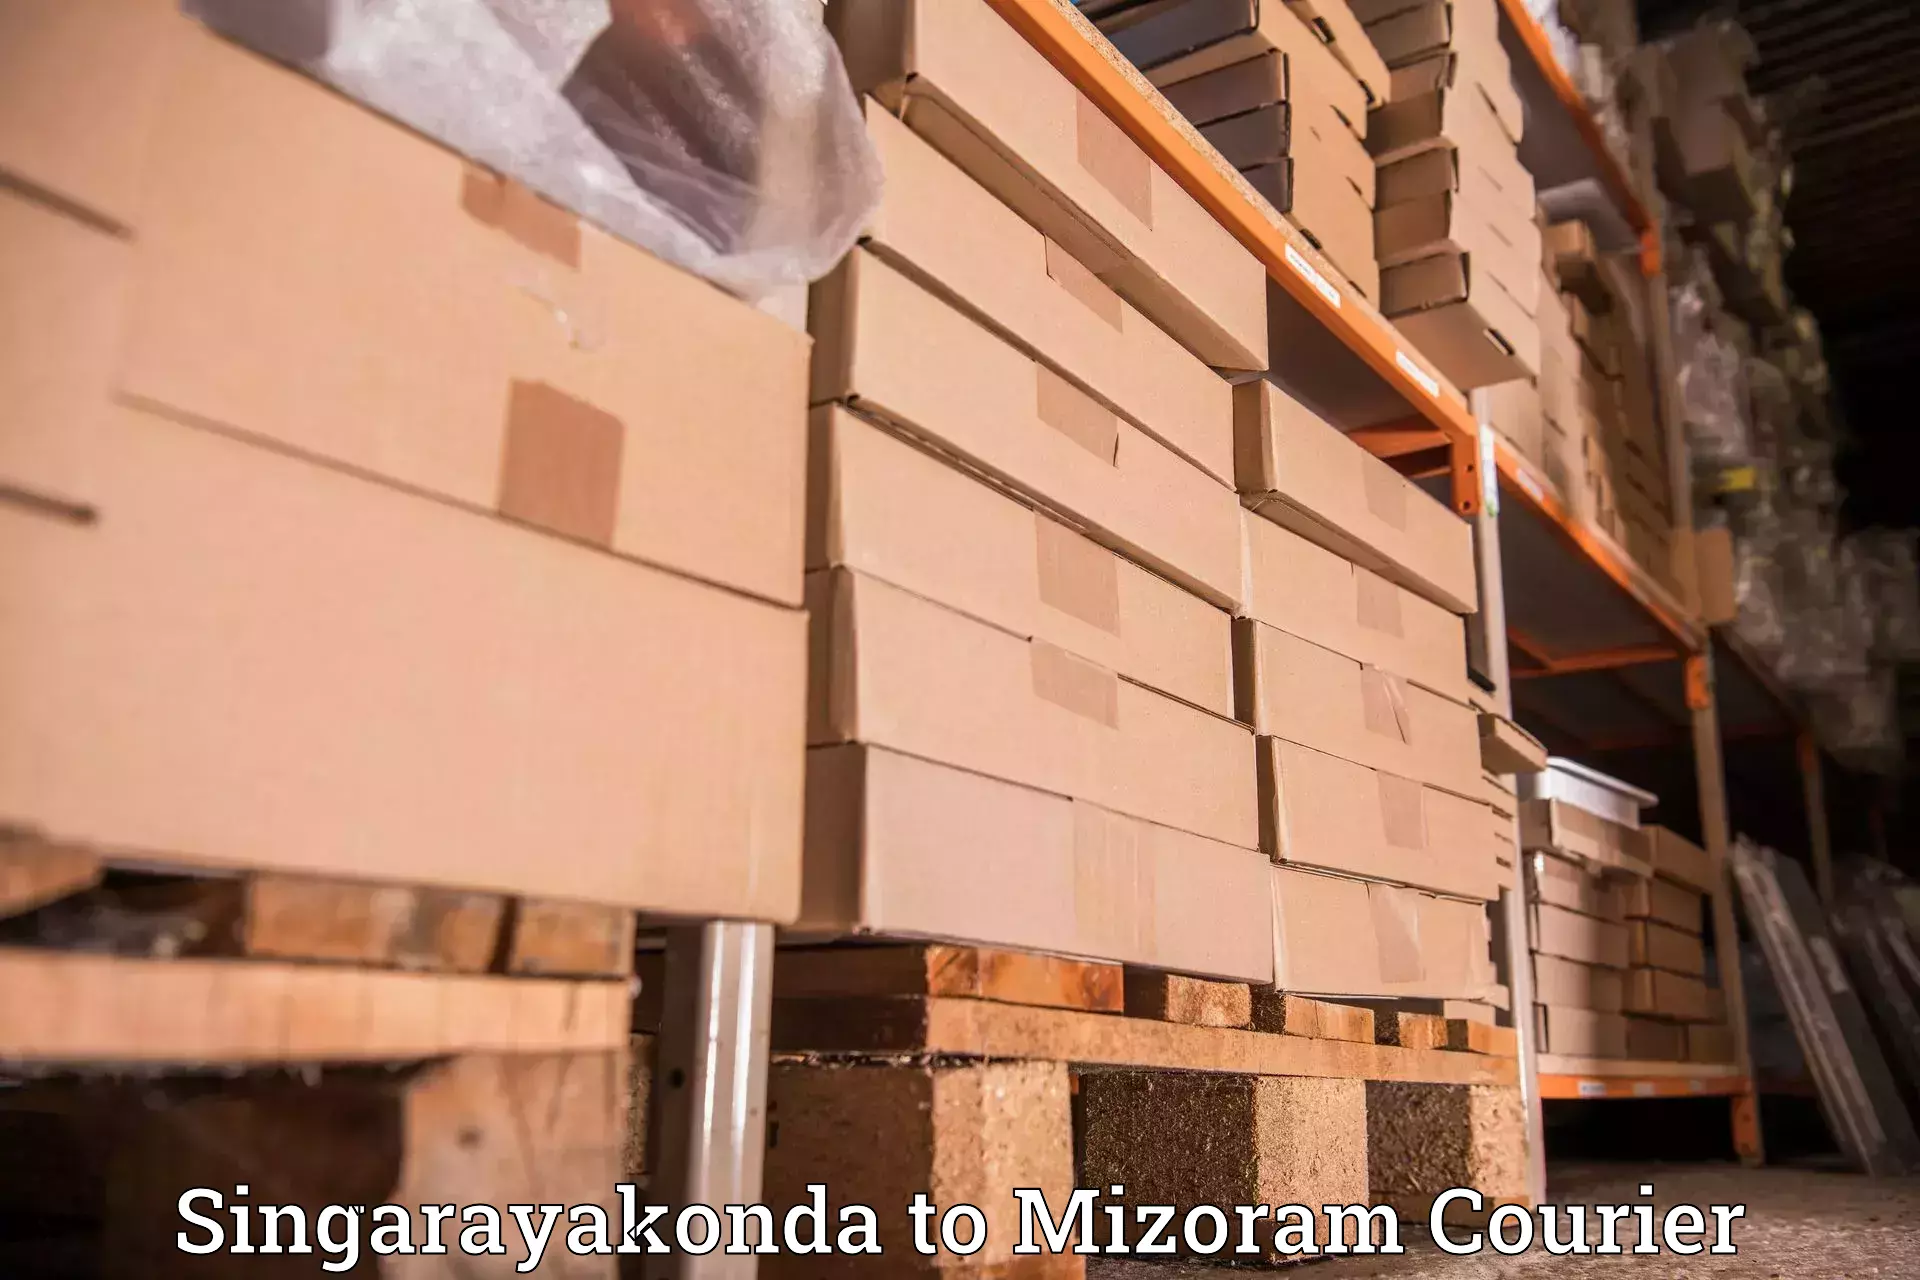 Reliable parcel services Singarayakonda to Mizoram